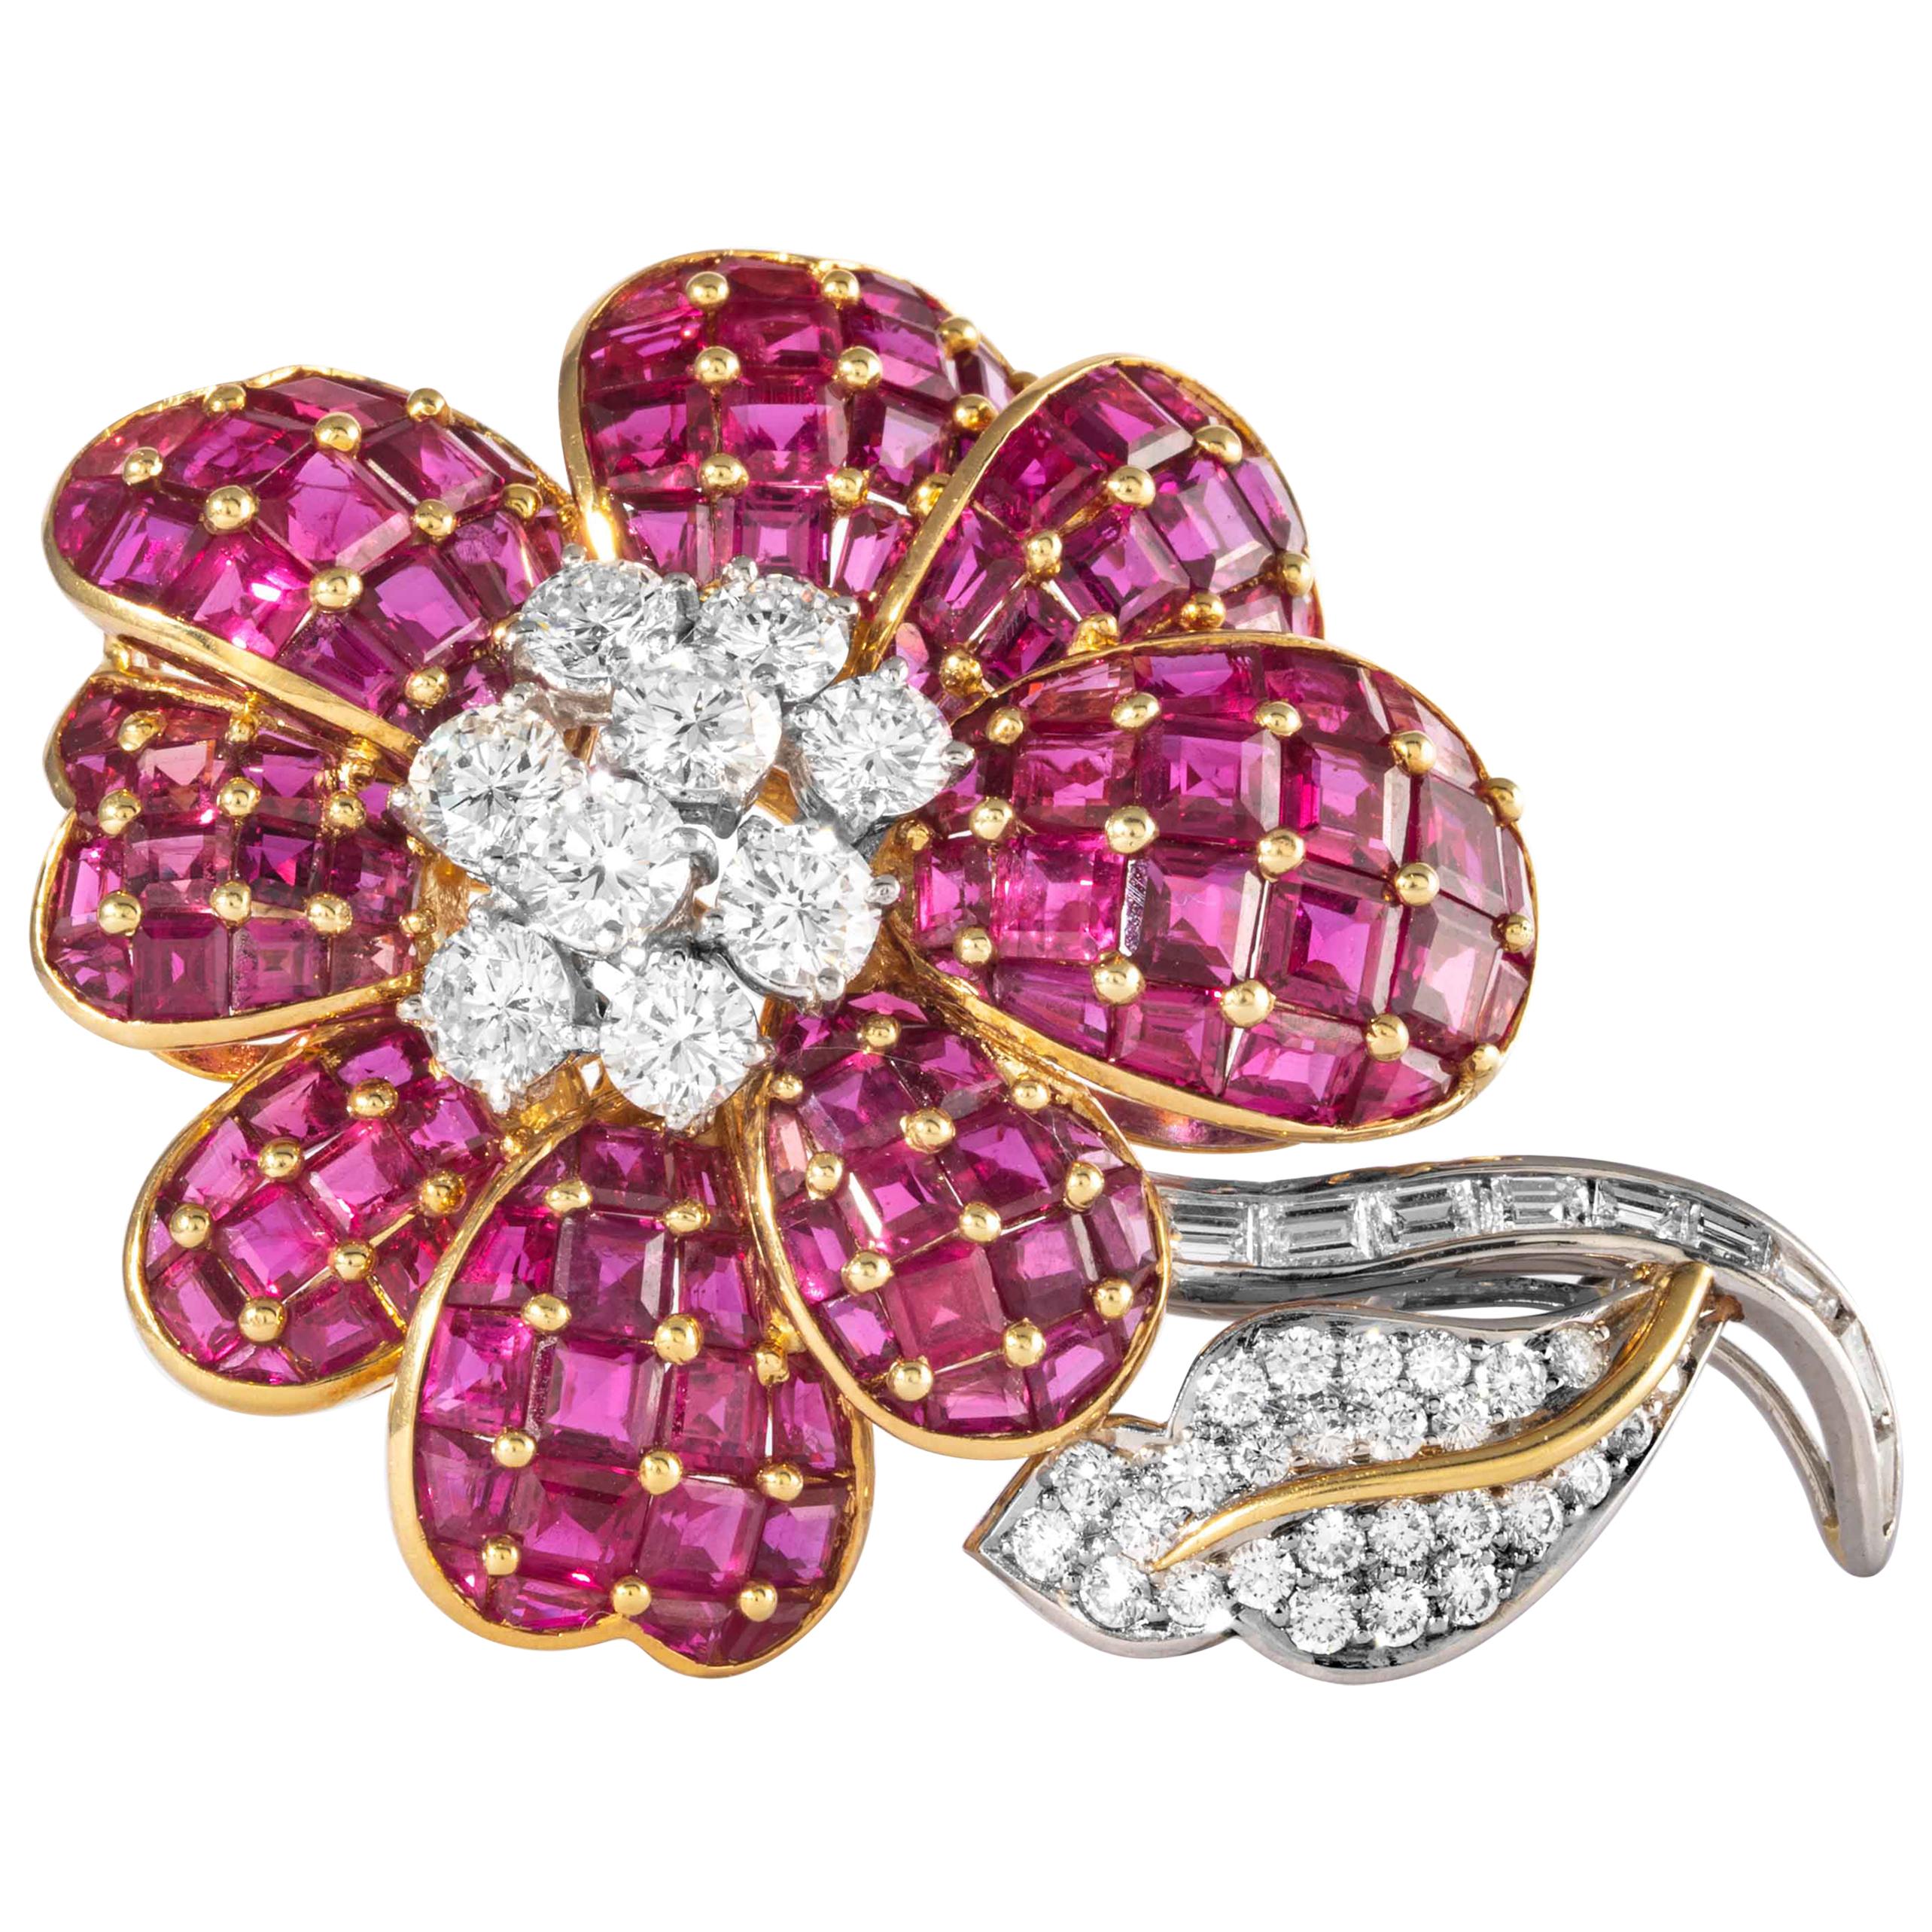 Blumenbrosche mit Rubin und Diamanten, signiert Oscar Heyman Brothers